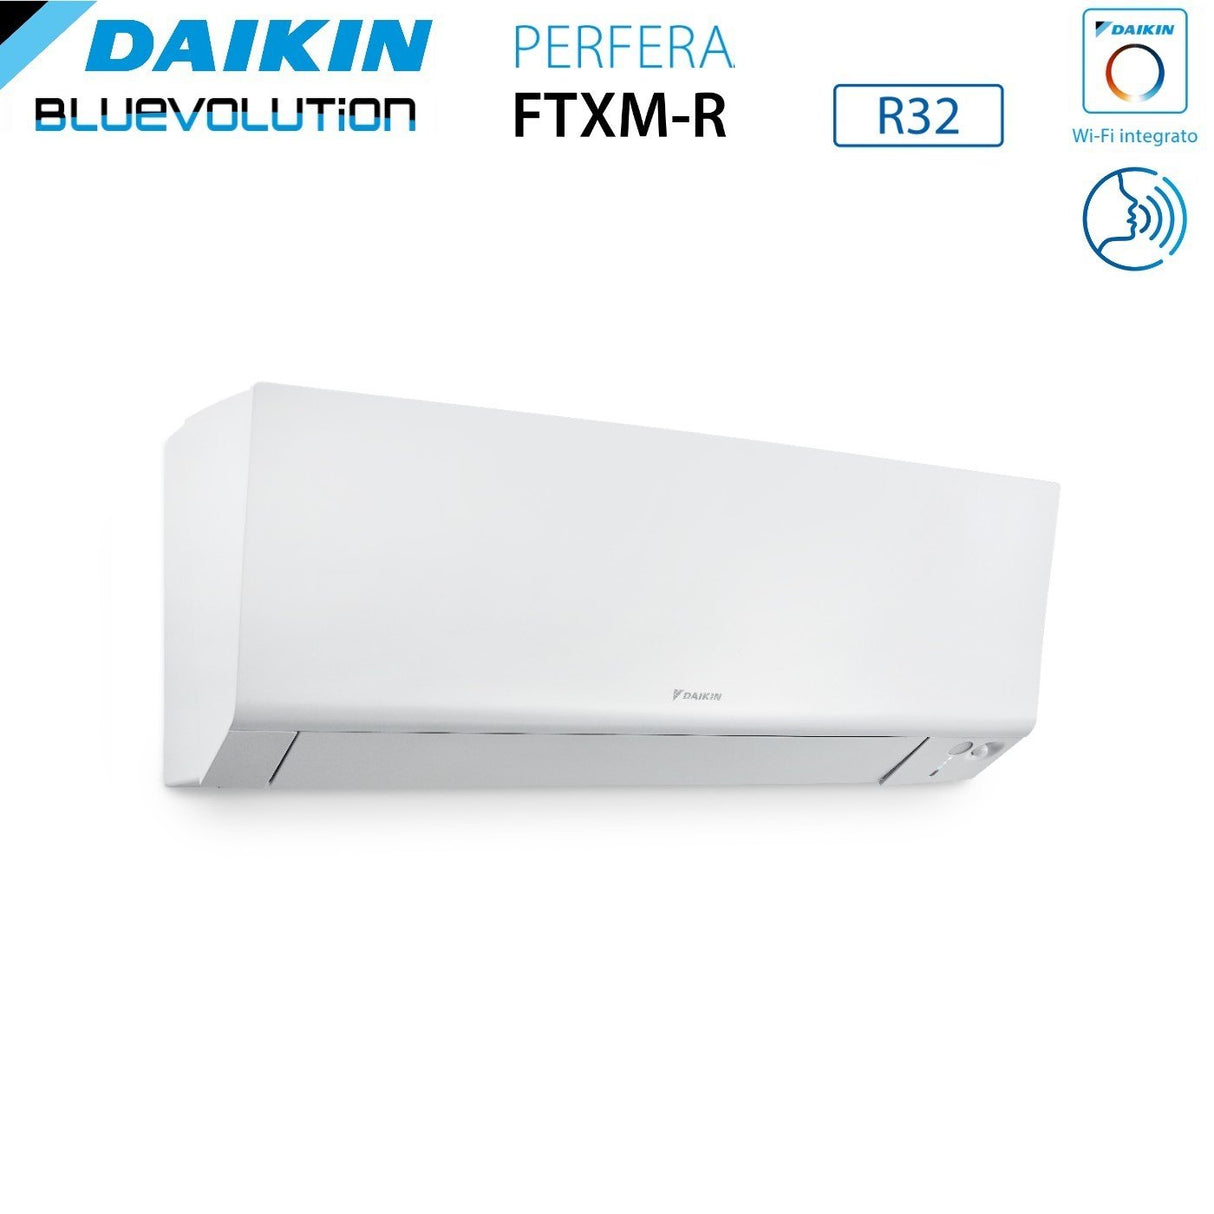 immagine-4-daikin-climatizzatore-condizionatore-daikin-bluevolution-quadri-split-inverter-serie-ftxmr-perfera-wall-79921-con-4mxm80a-r-32-wi-fi-integrato-70009000900021000-garanzia-italiana